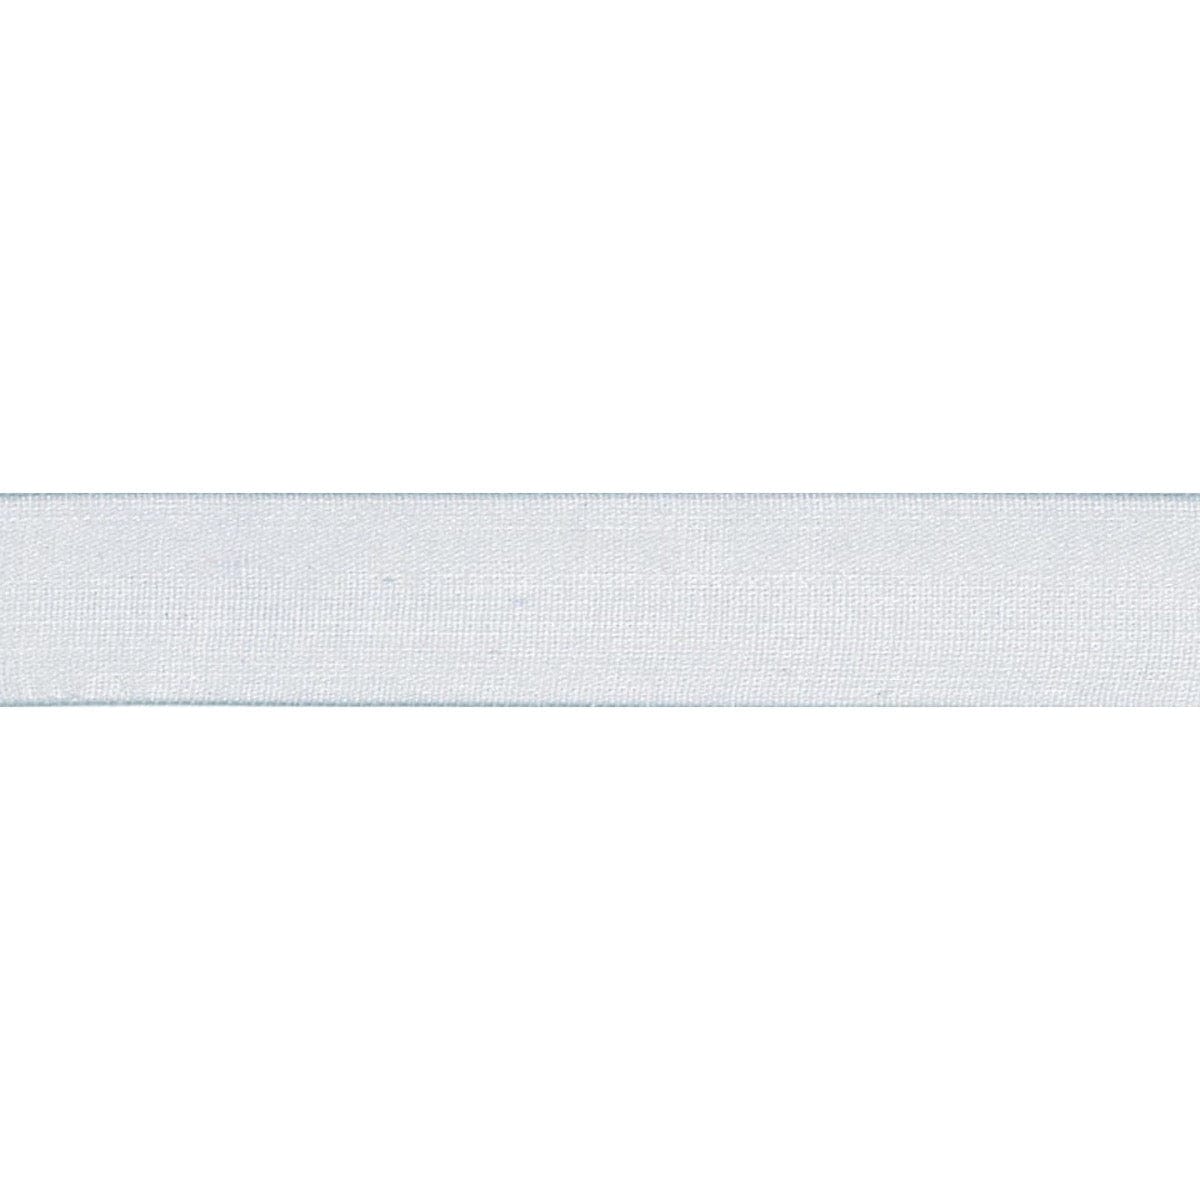 Super Sheer Ribbon: 15mm: Silver Grey. Price per metre.